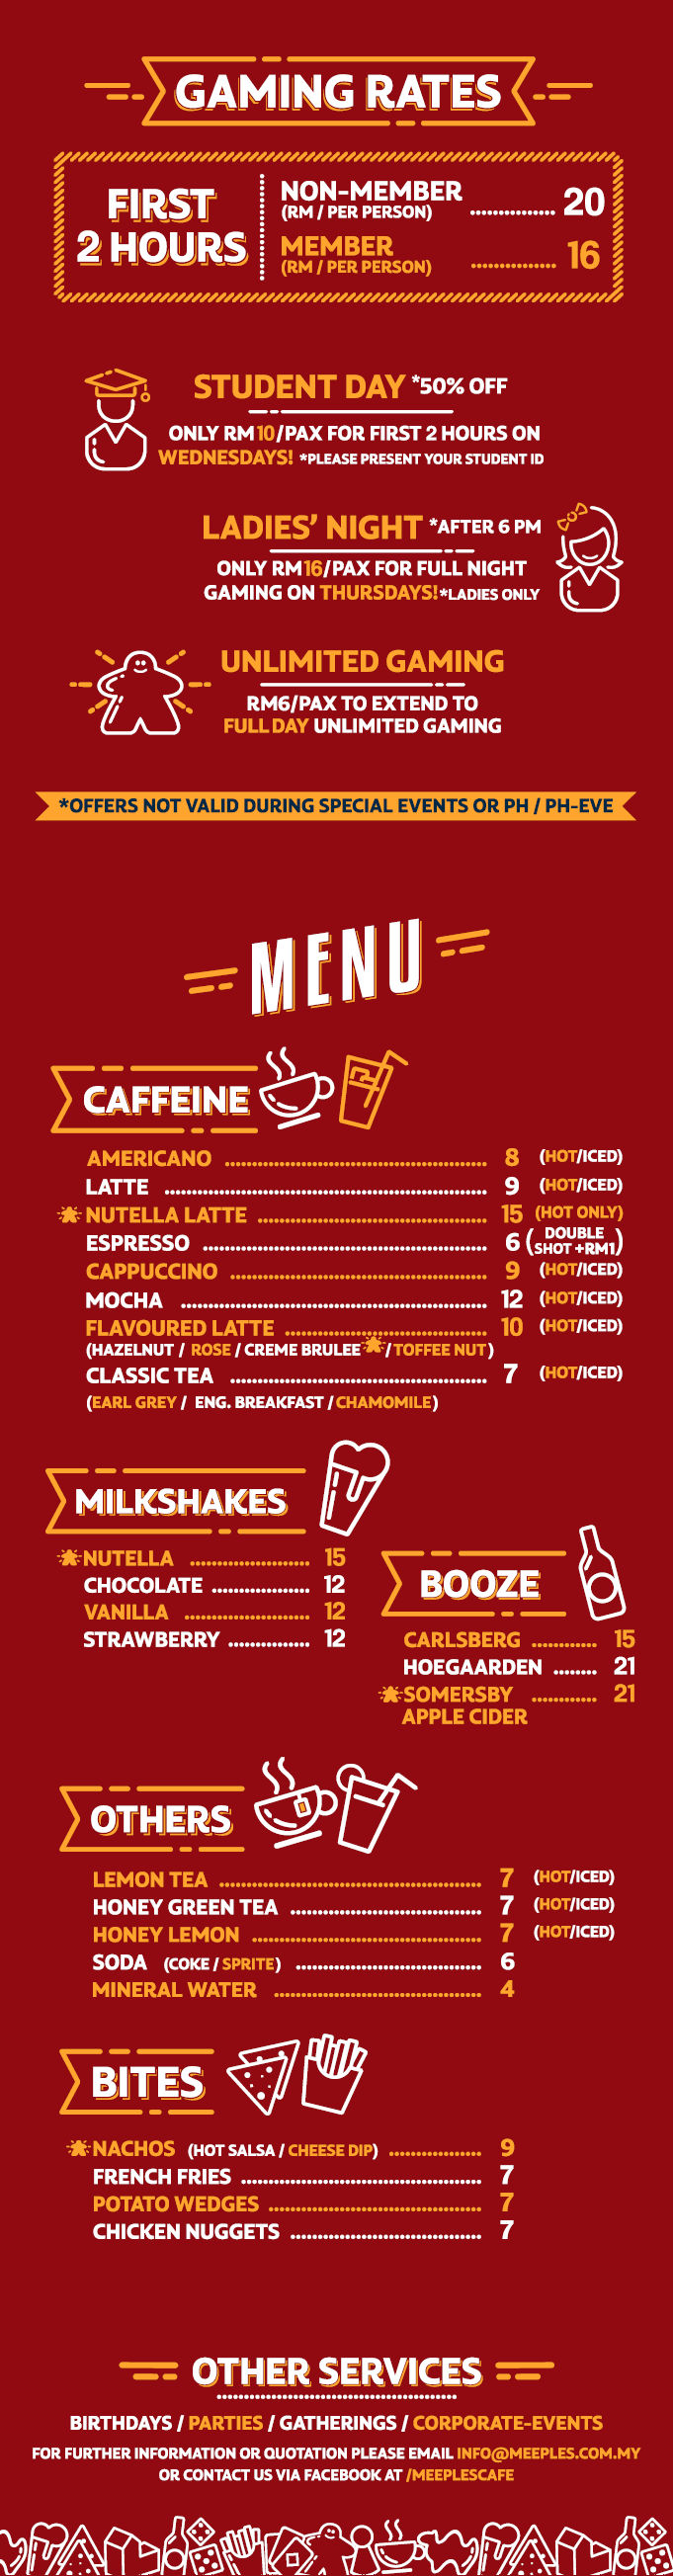 Meeples new cafe menu